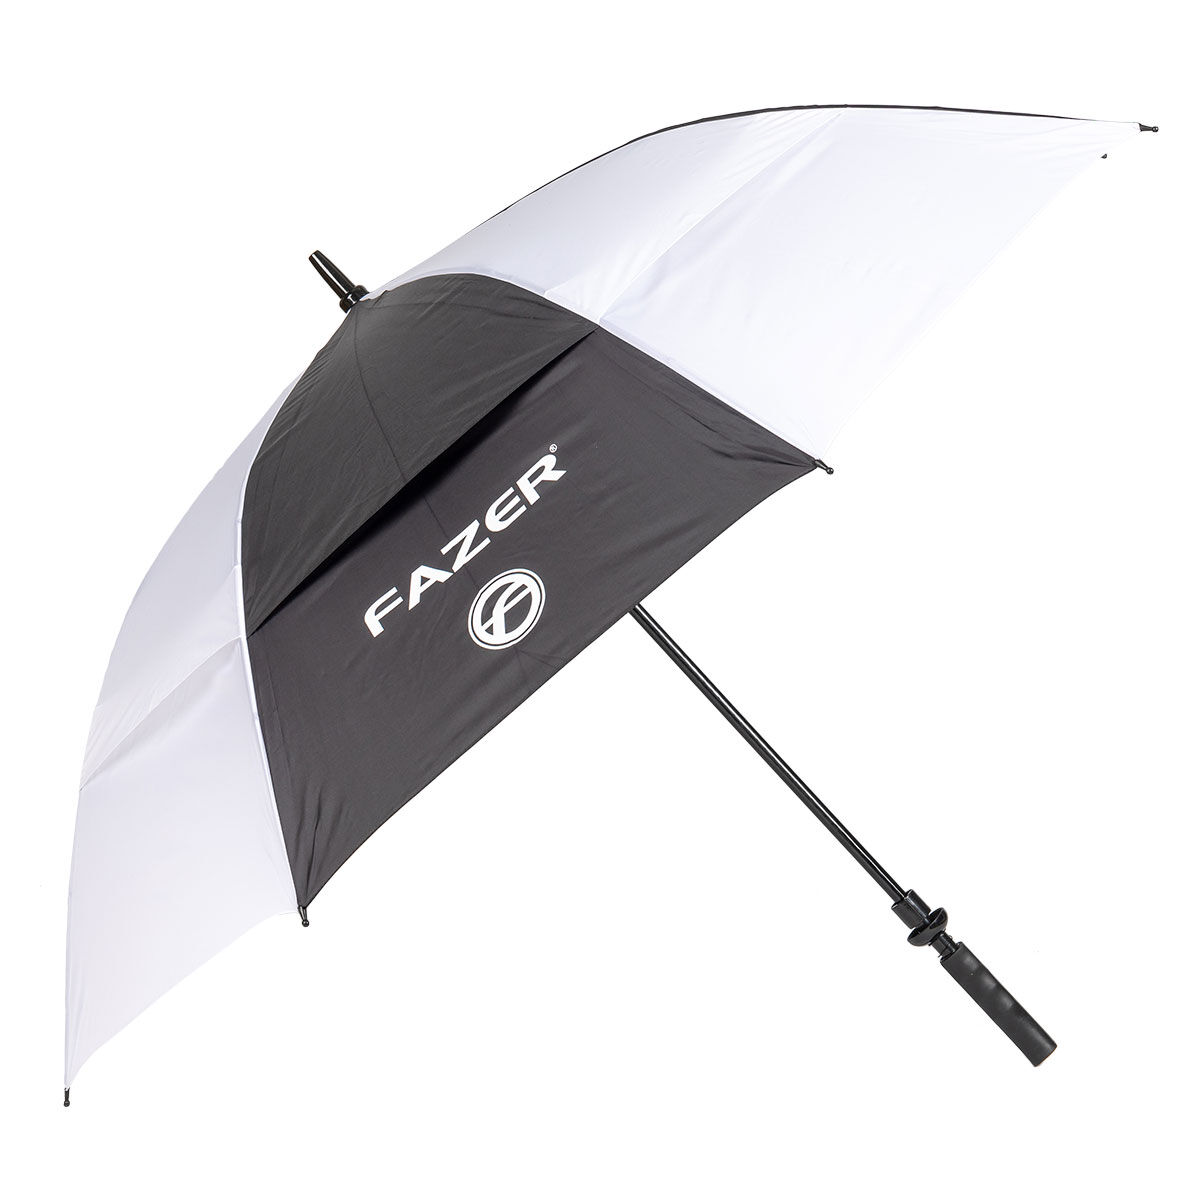 Fazer Black and White Logo Print Dual Canopy Golf Umbrella, 62" | American Golf